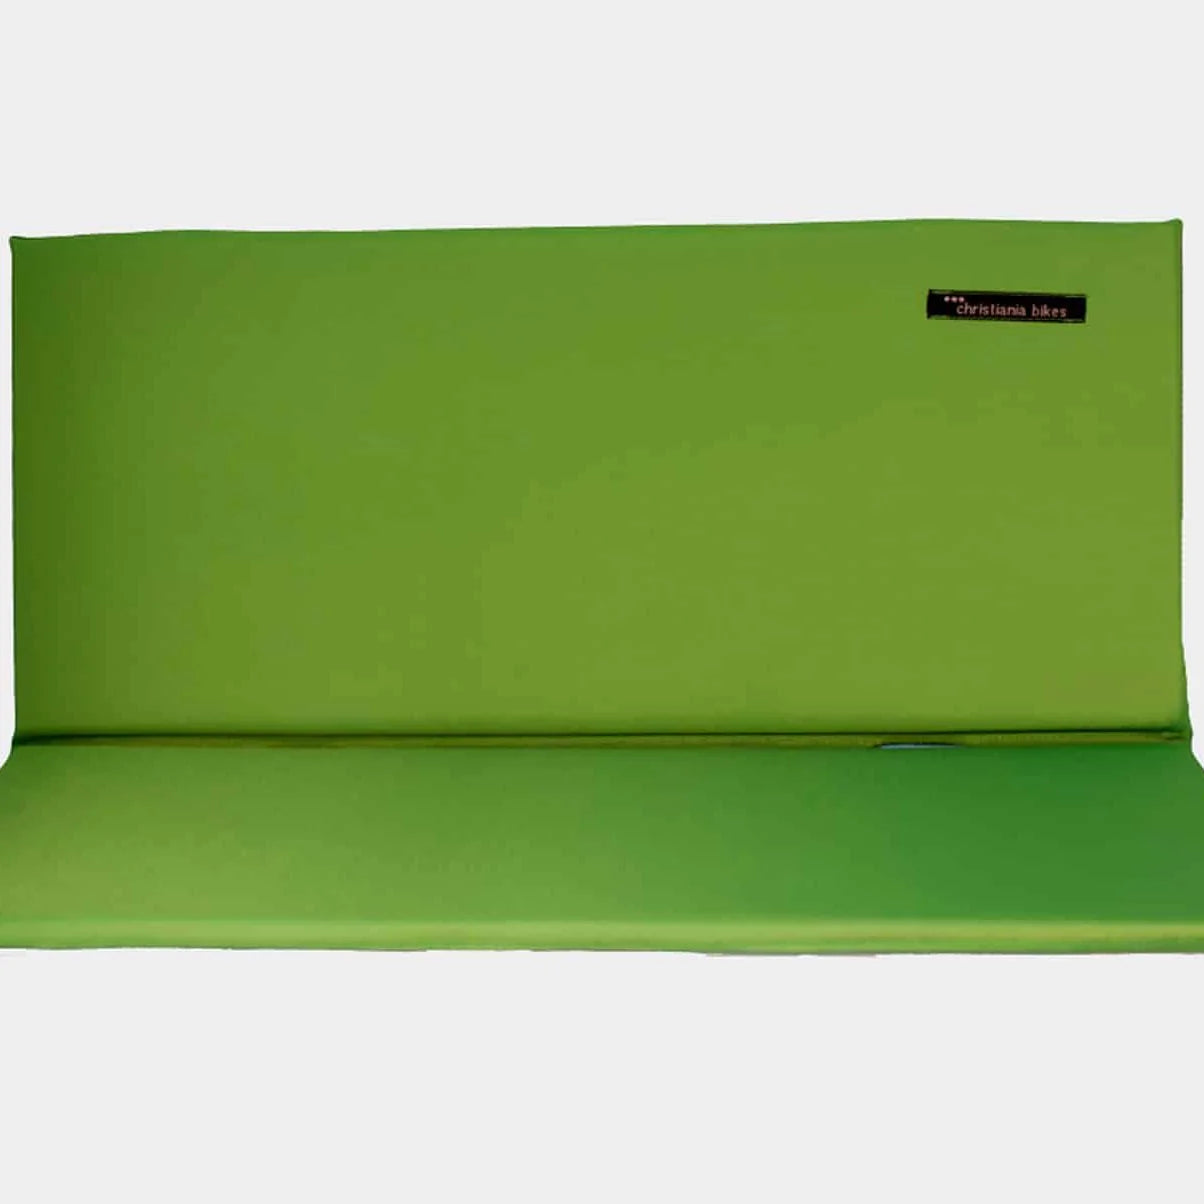 Bench Cushion